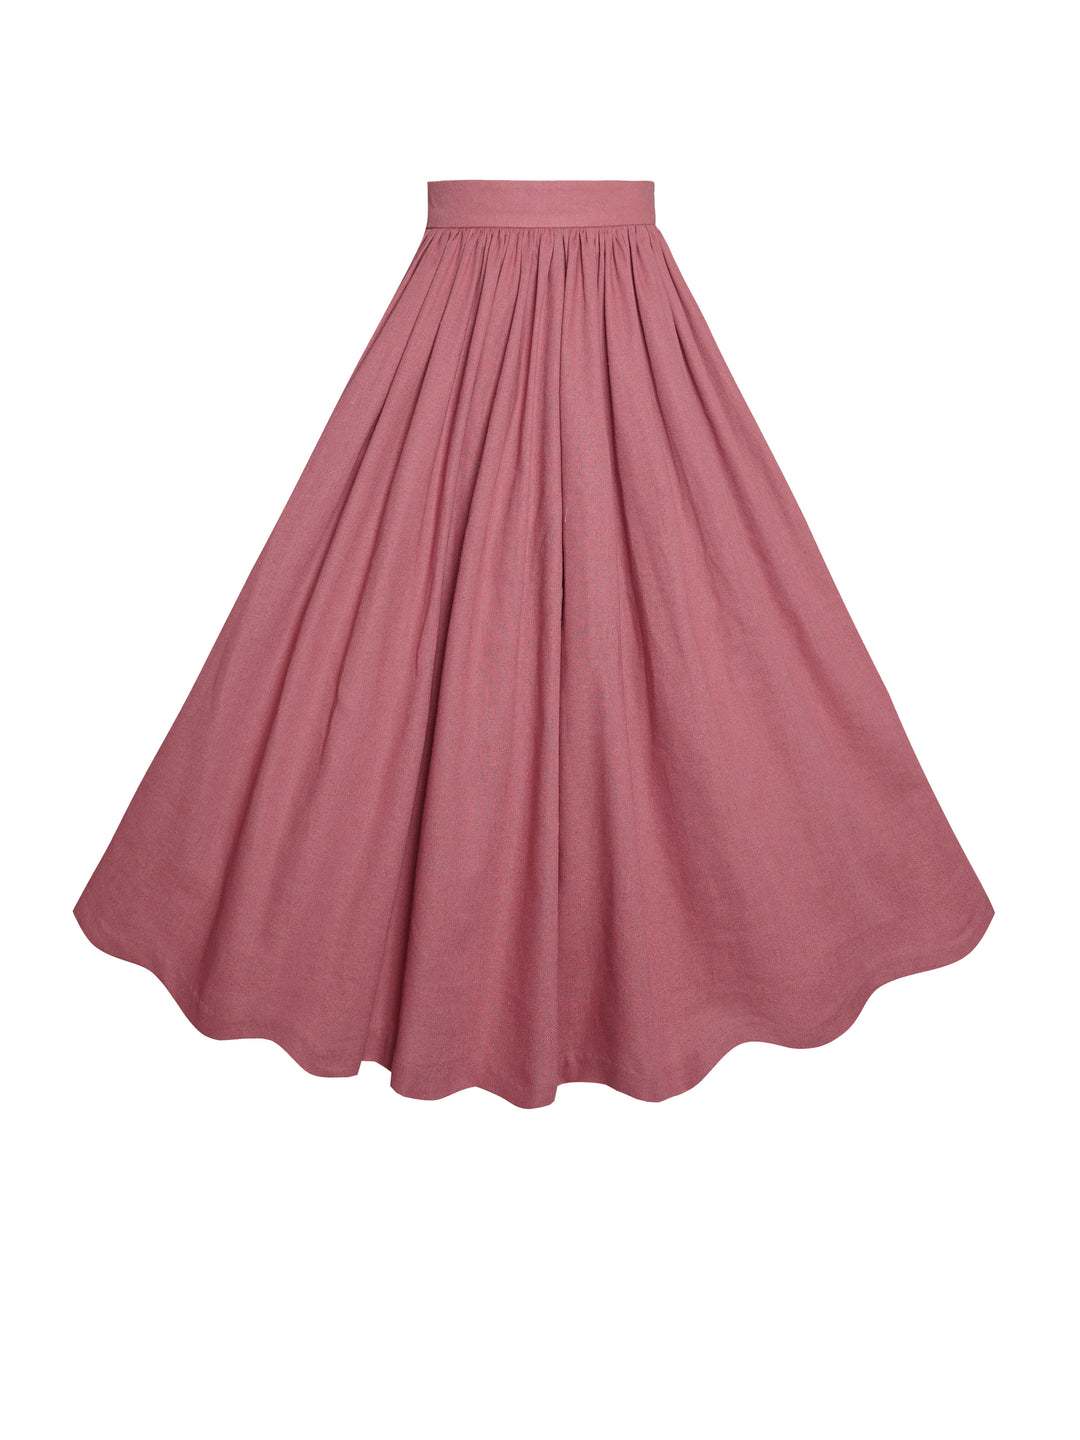 MTO - Lola Skirt in Antique Rose Linen